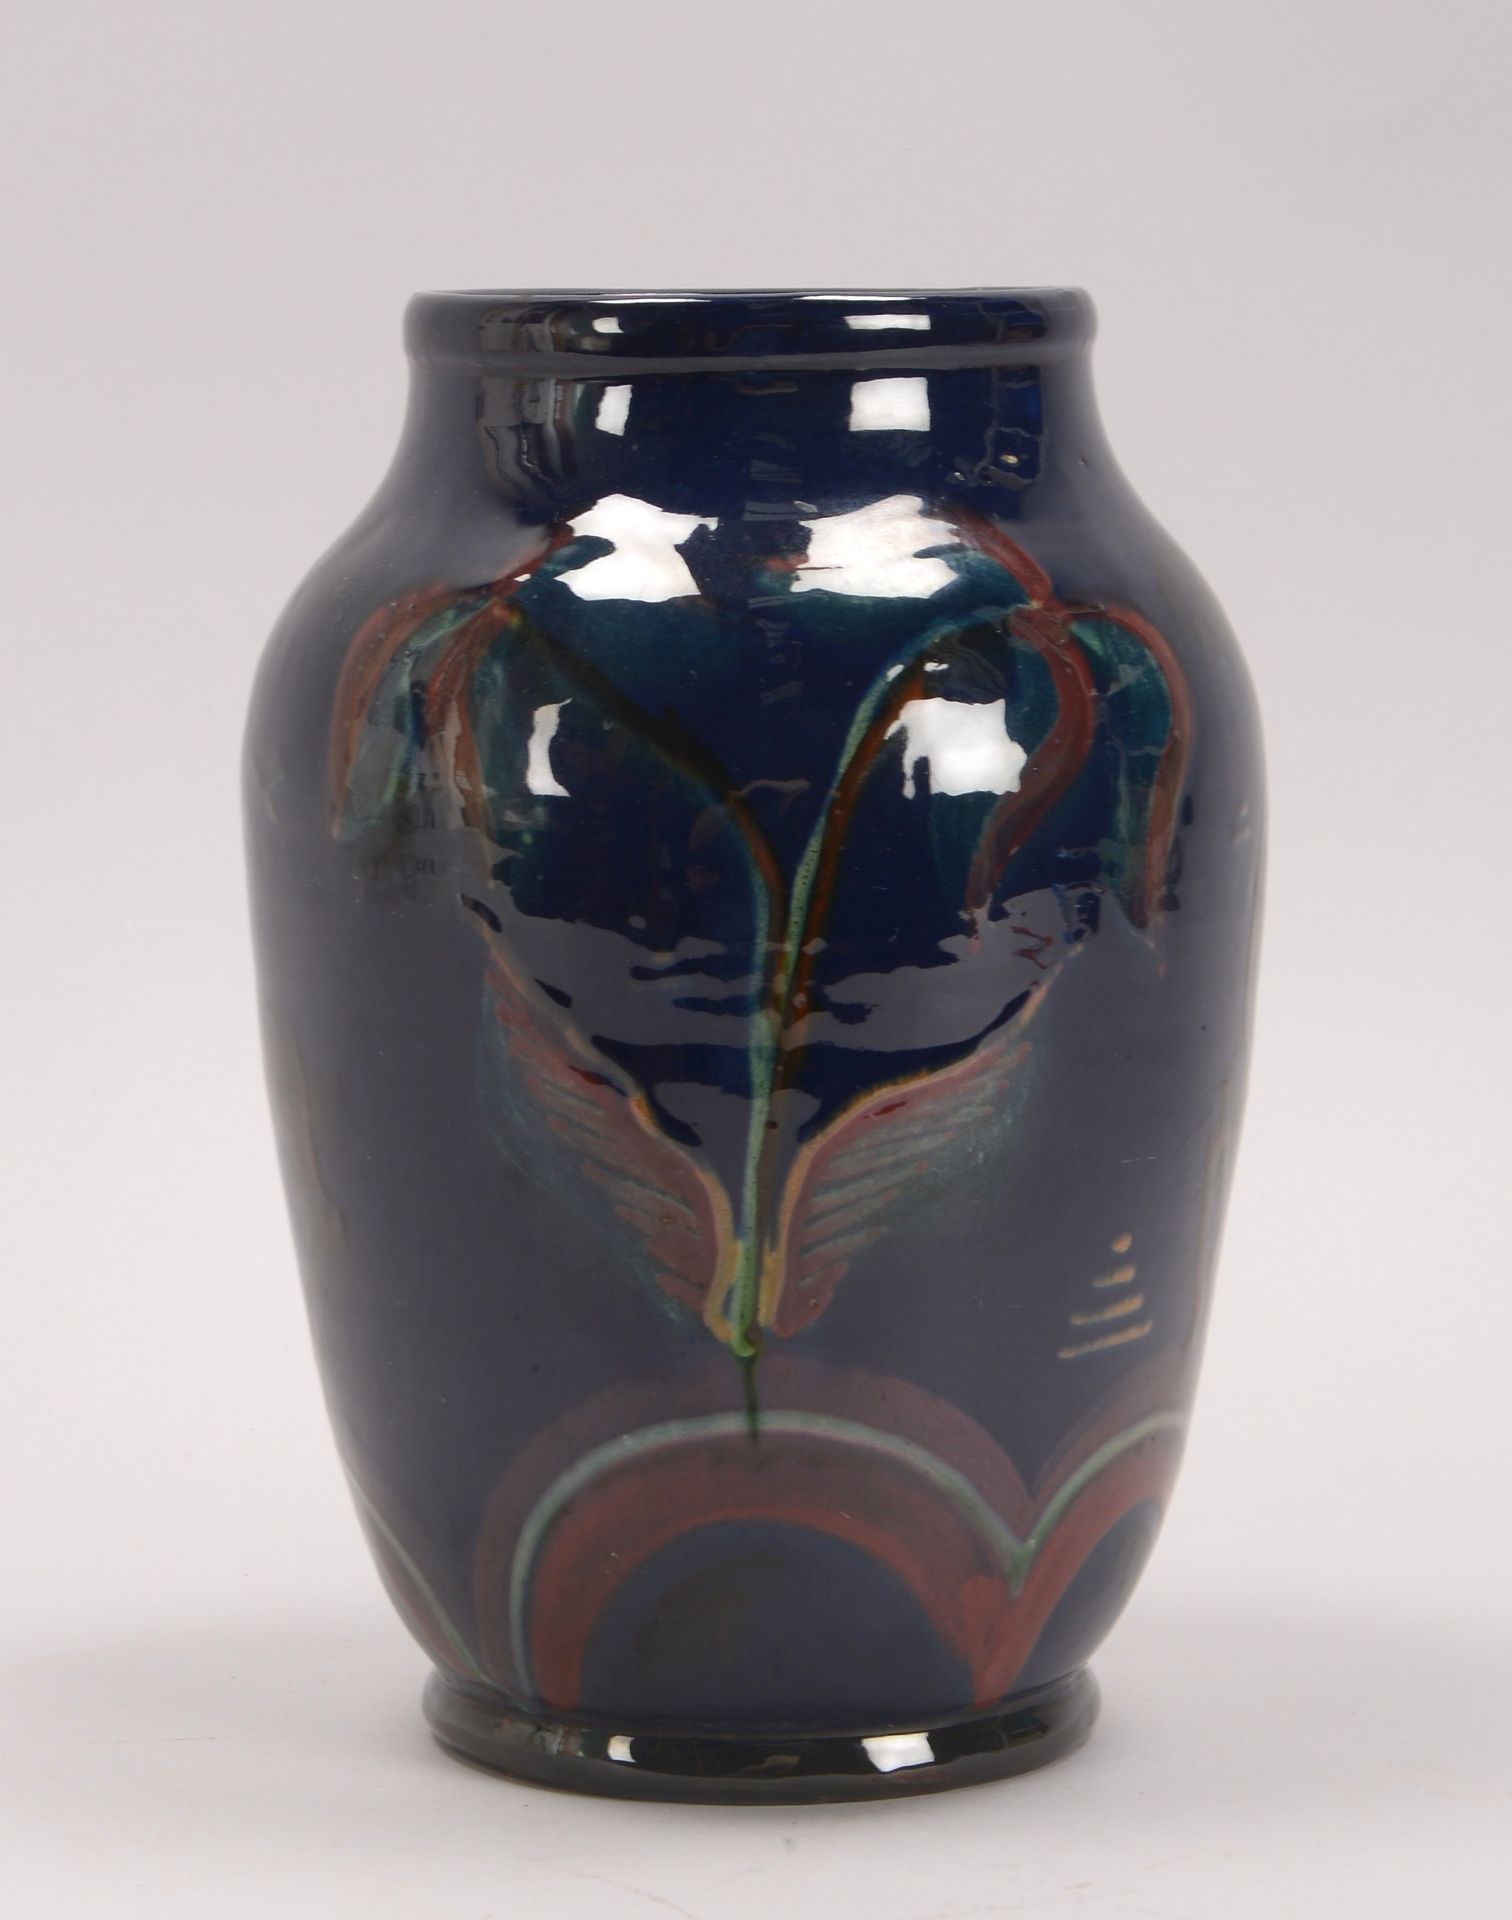 Keramikvase, glasiert, mit floralen Motiven und Tiermotiven (Steinbockdarstellungen), ritzsigniert (